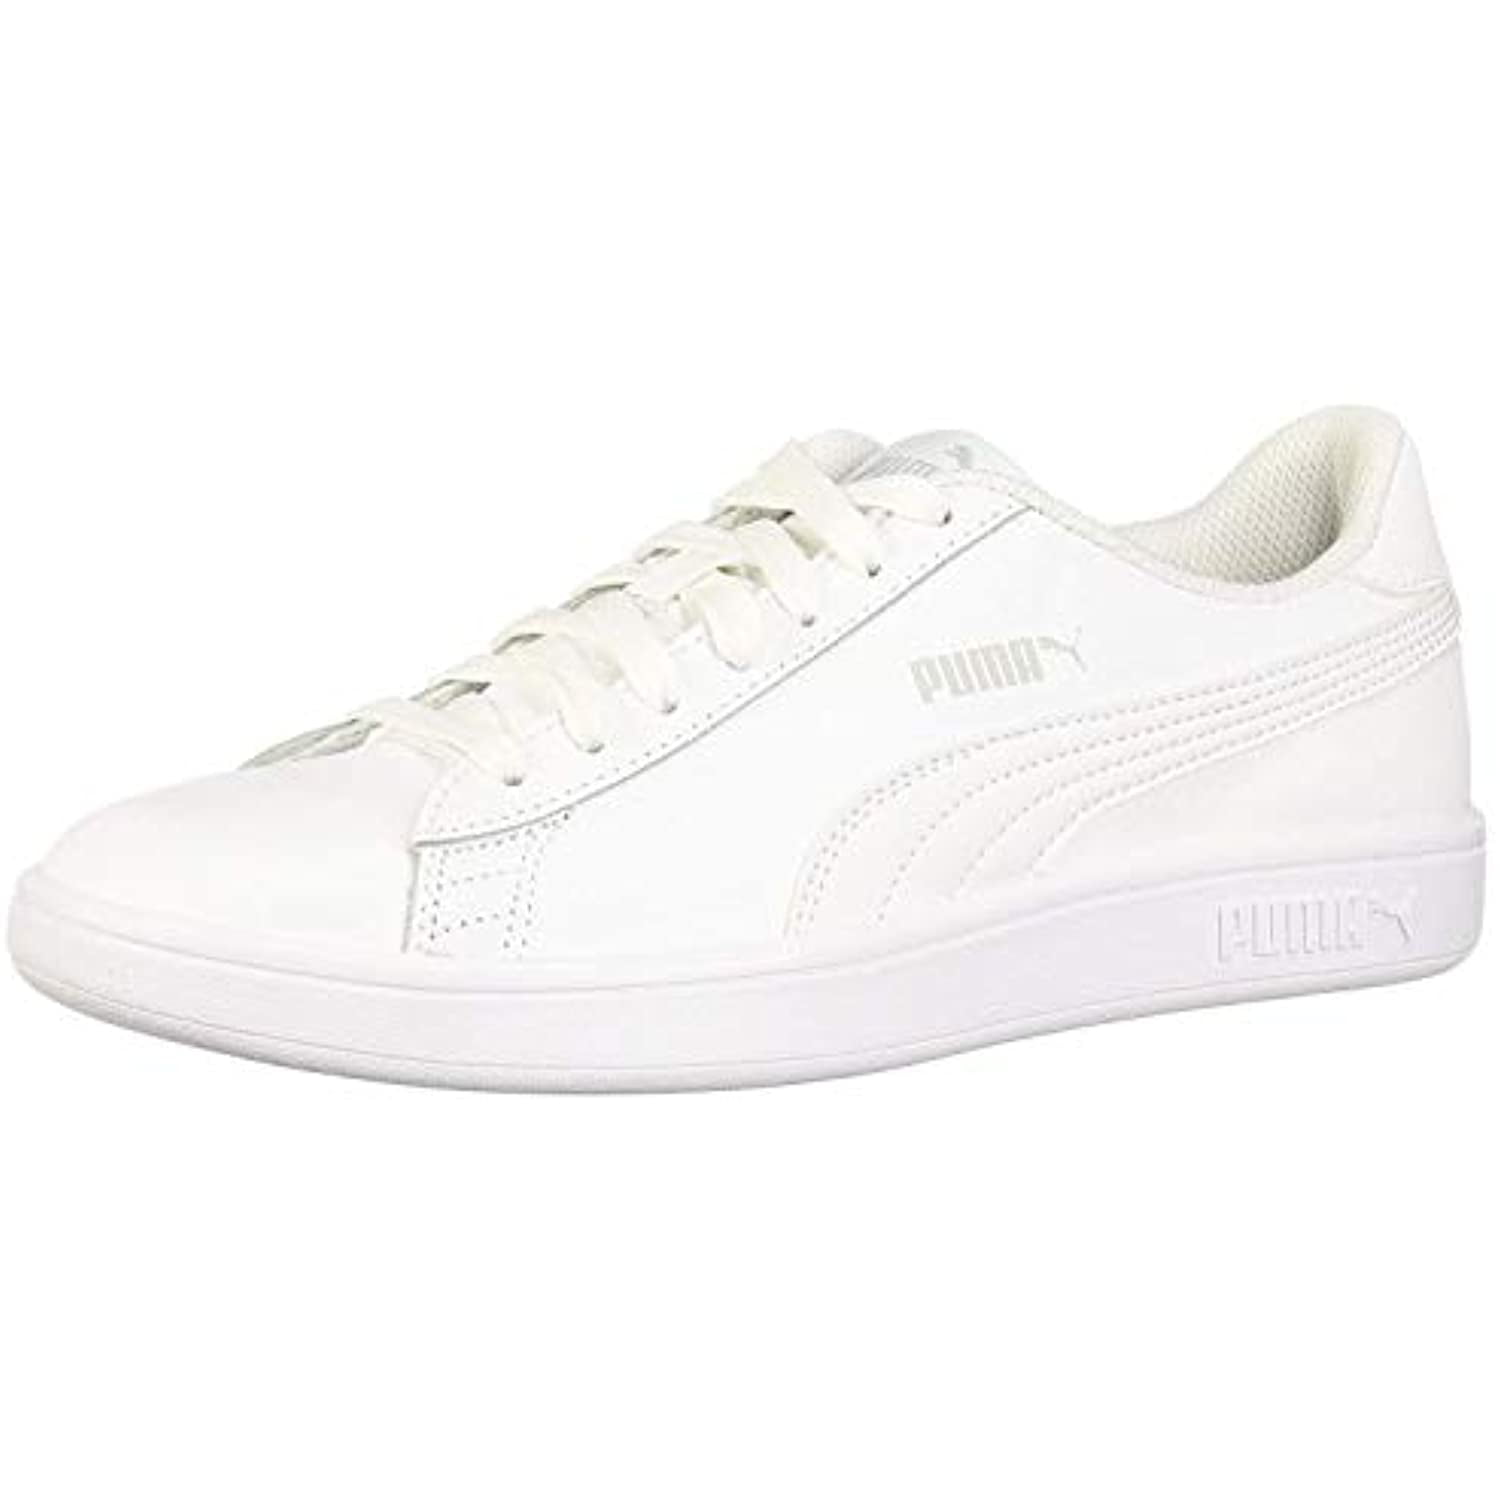 PUMA Men's v2 Shoe, puma white-puma white, 9.5 M Walmart.com